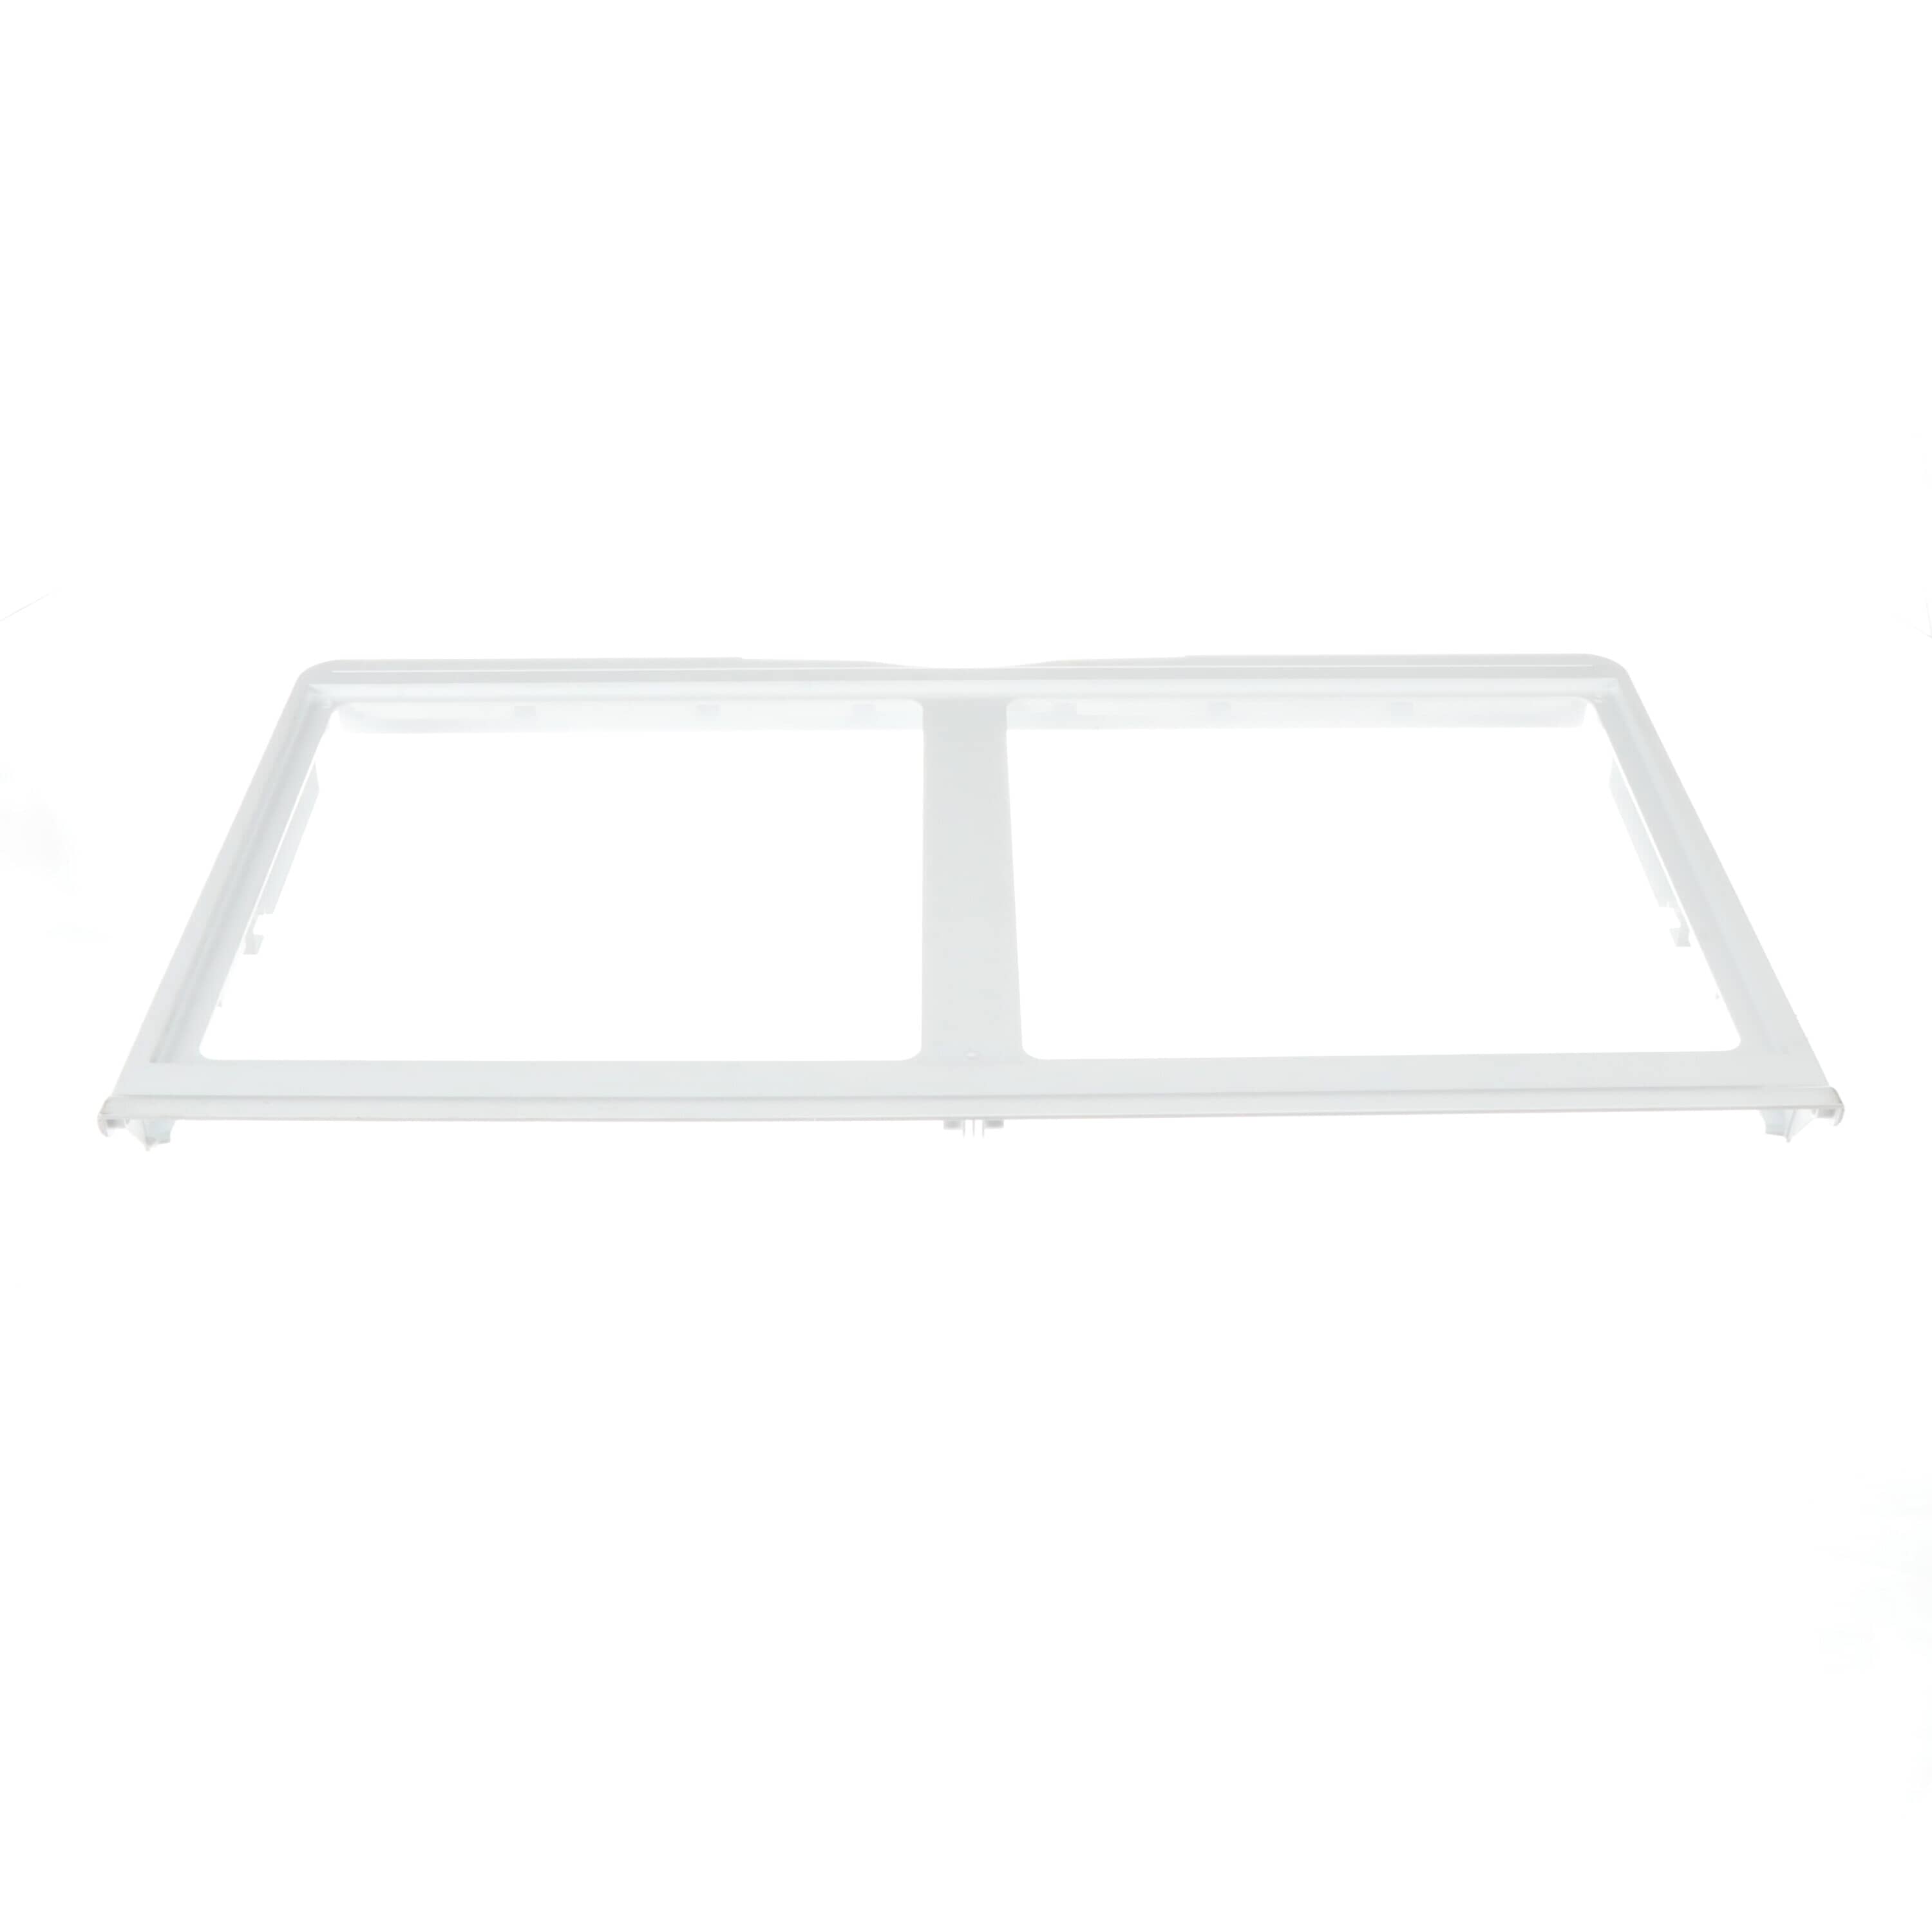 LG 3550JJ1033A Refrigerator Crisper Cover Glass Shelf Frame